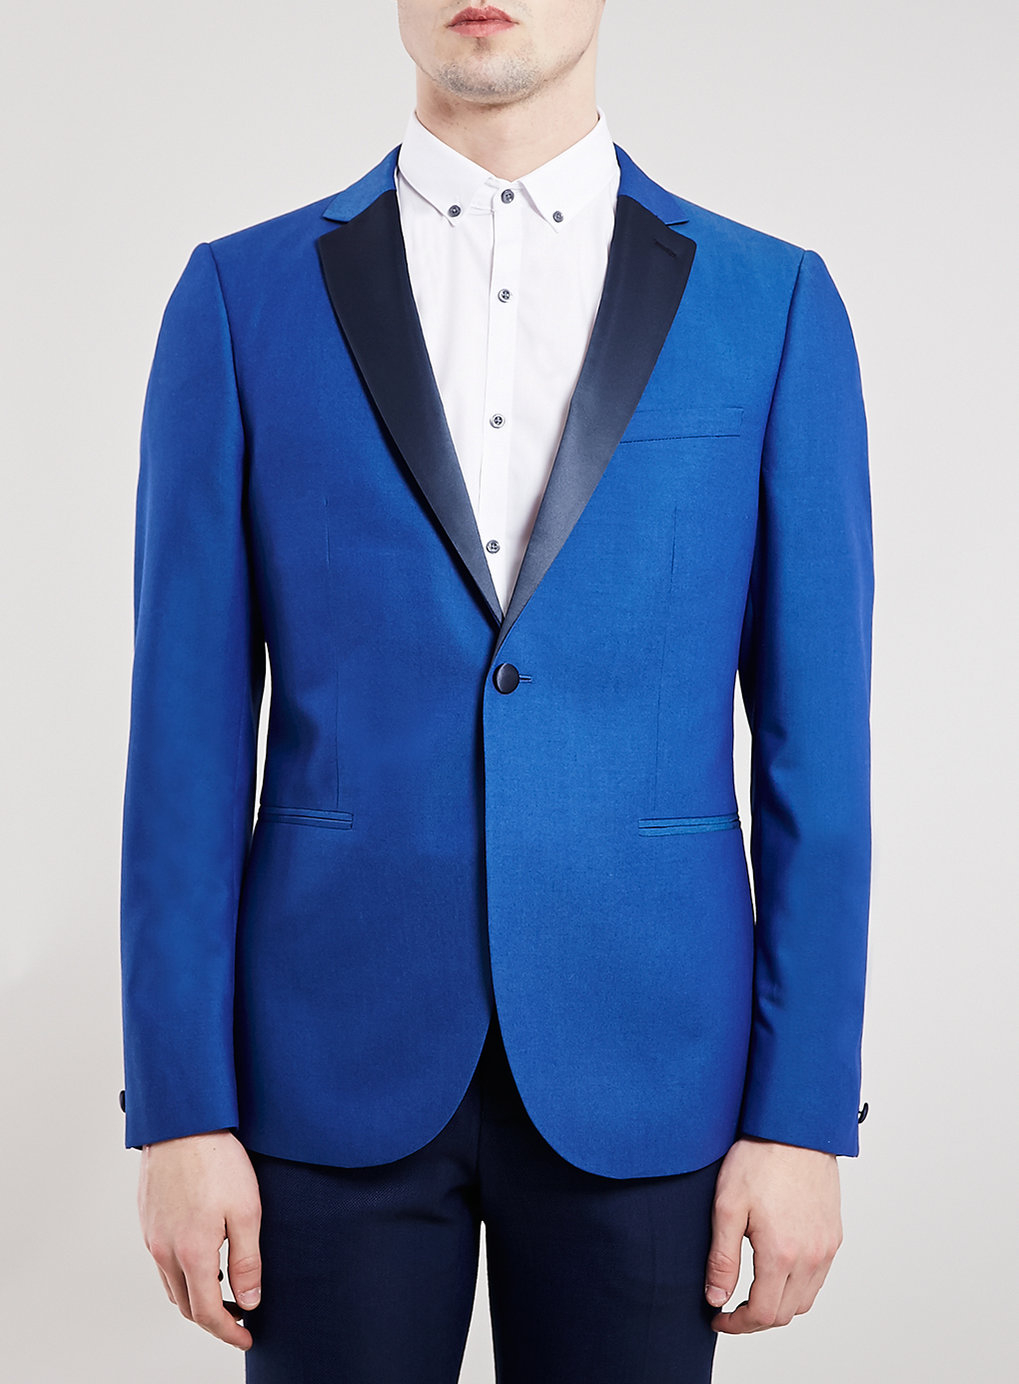 TOPMAN Premium Cobalt Blue Skinny Fit Tuxedo Jacket for Men - Lyst